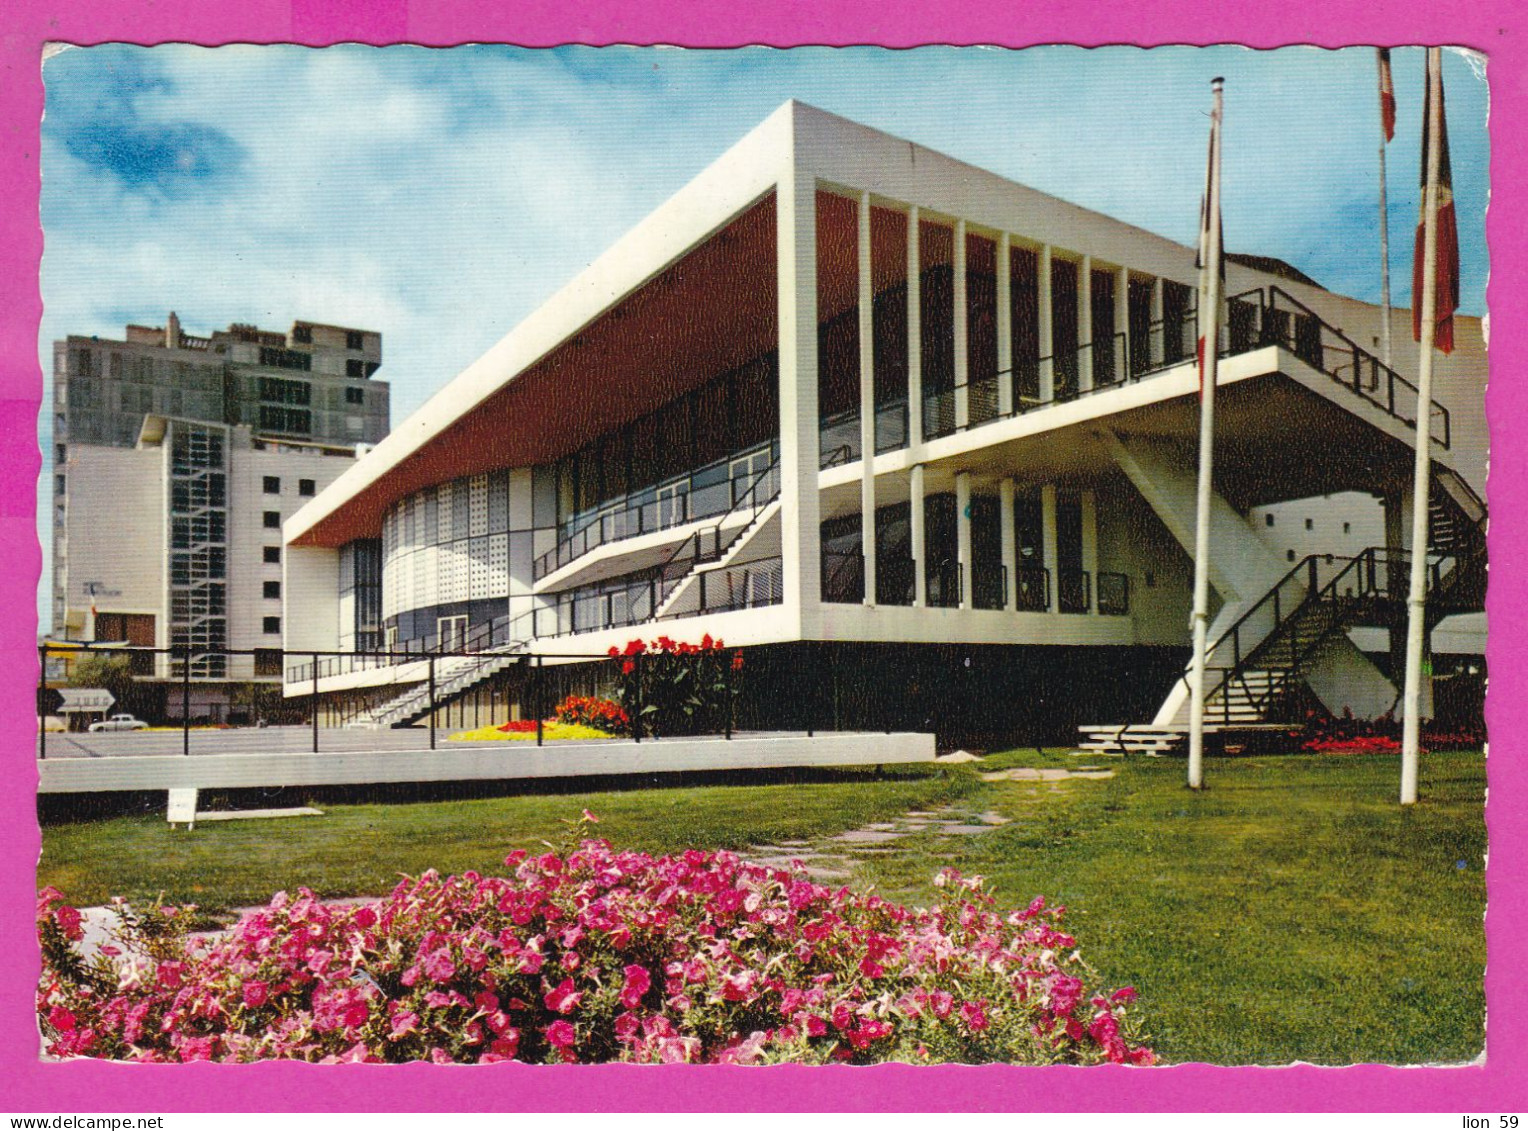 294106 / France - ROYAN Palais Des Congres PC 1968 USED 0.20+0.20 Fr. Marianne De Cocteau Flamme ST PALAIS S/MER PLAGES - Covers & Documents